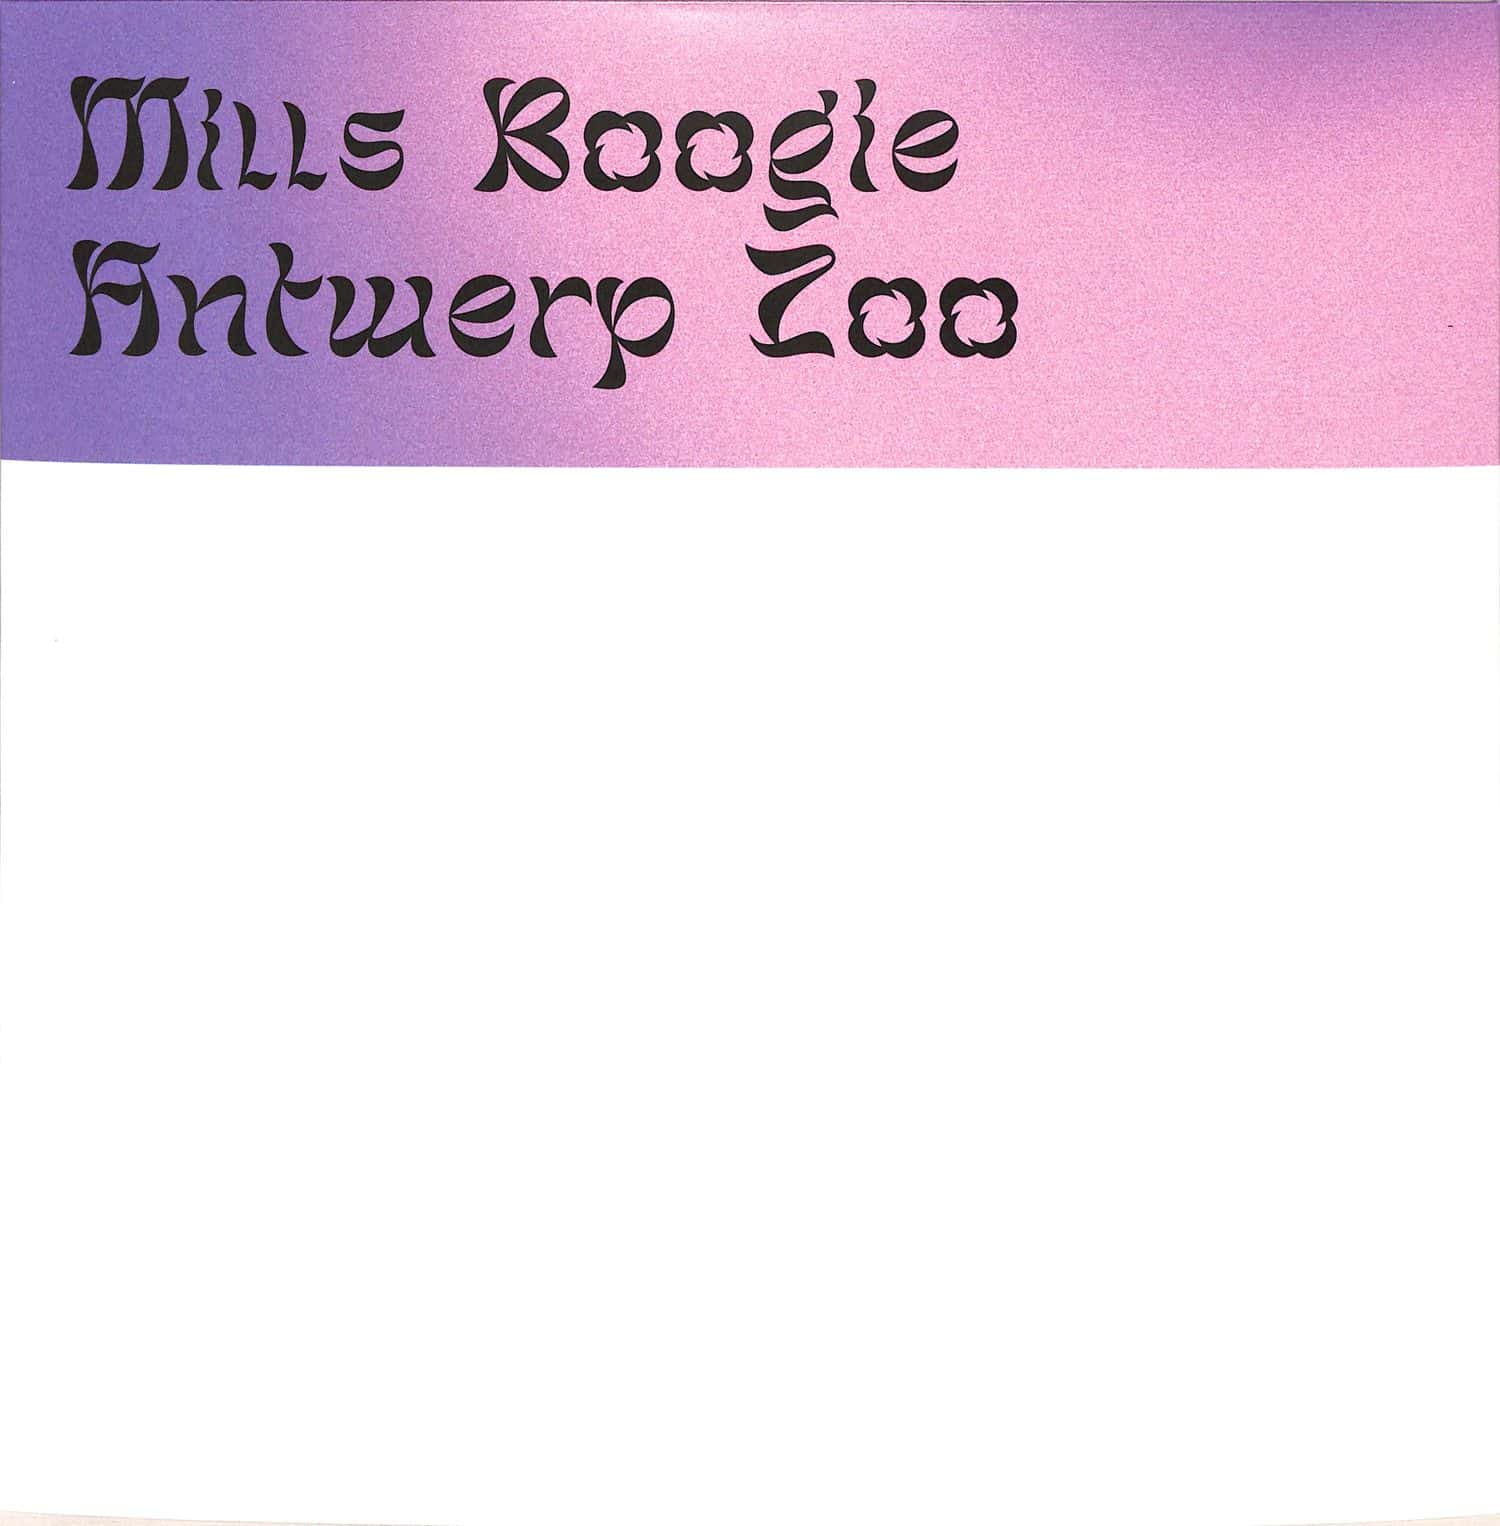 Mills Boogie - ANTWERP ZOO